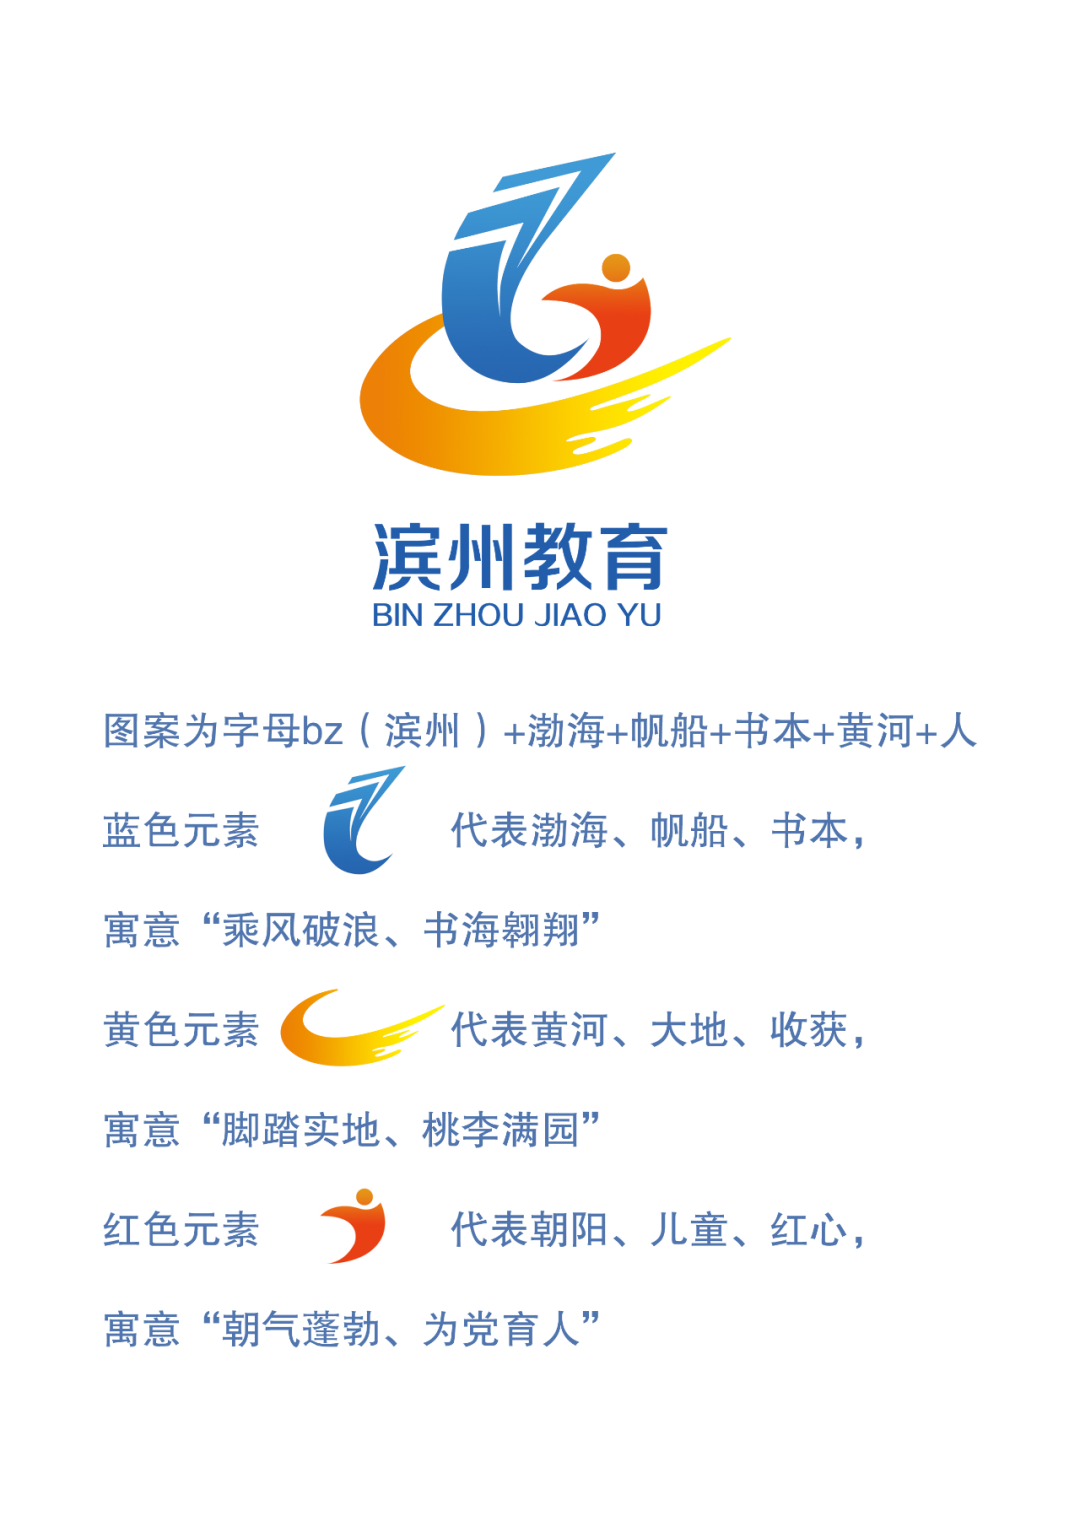 滨州市教育局发布滨州教育官方logo !